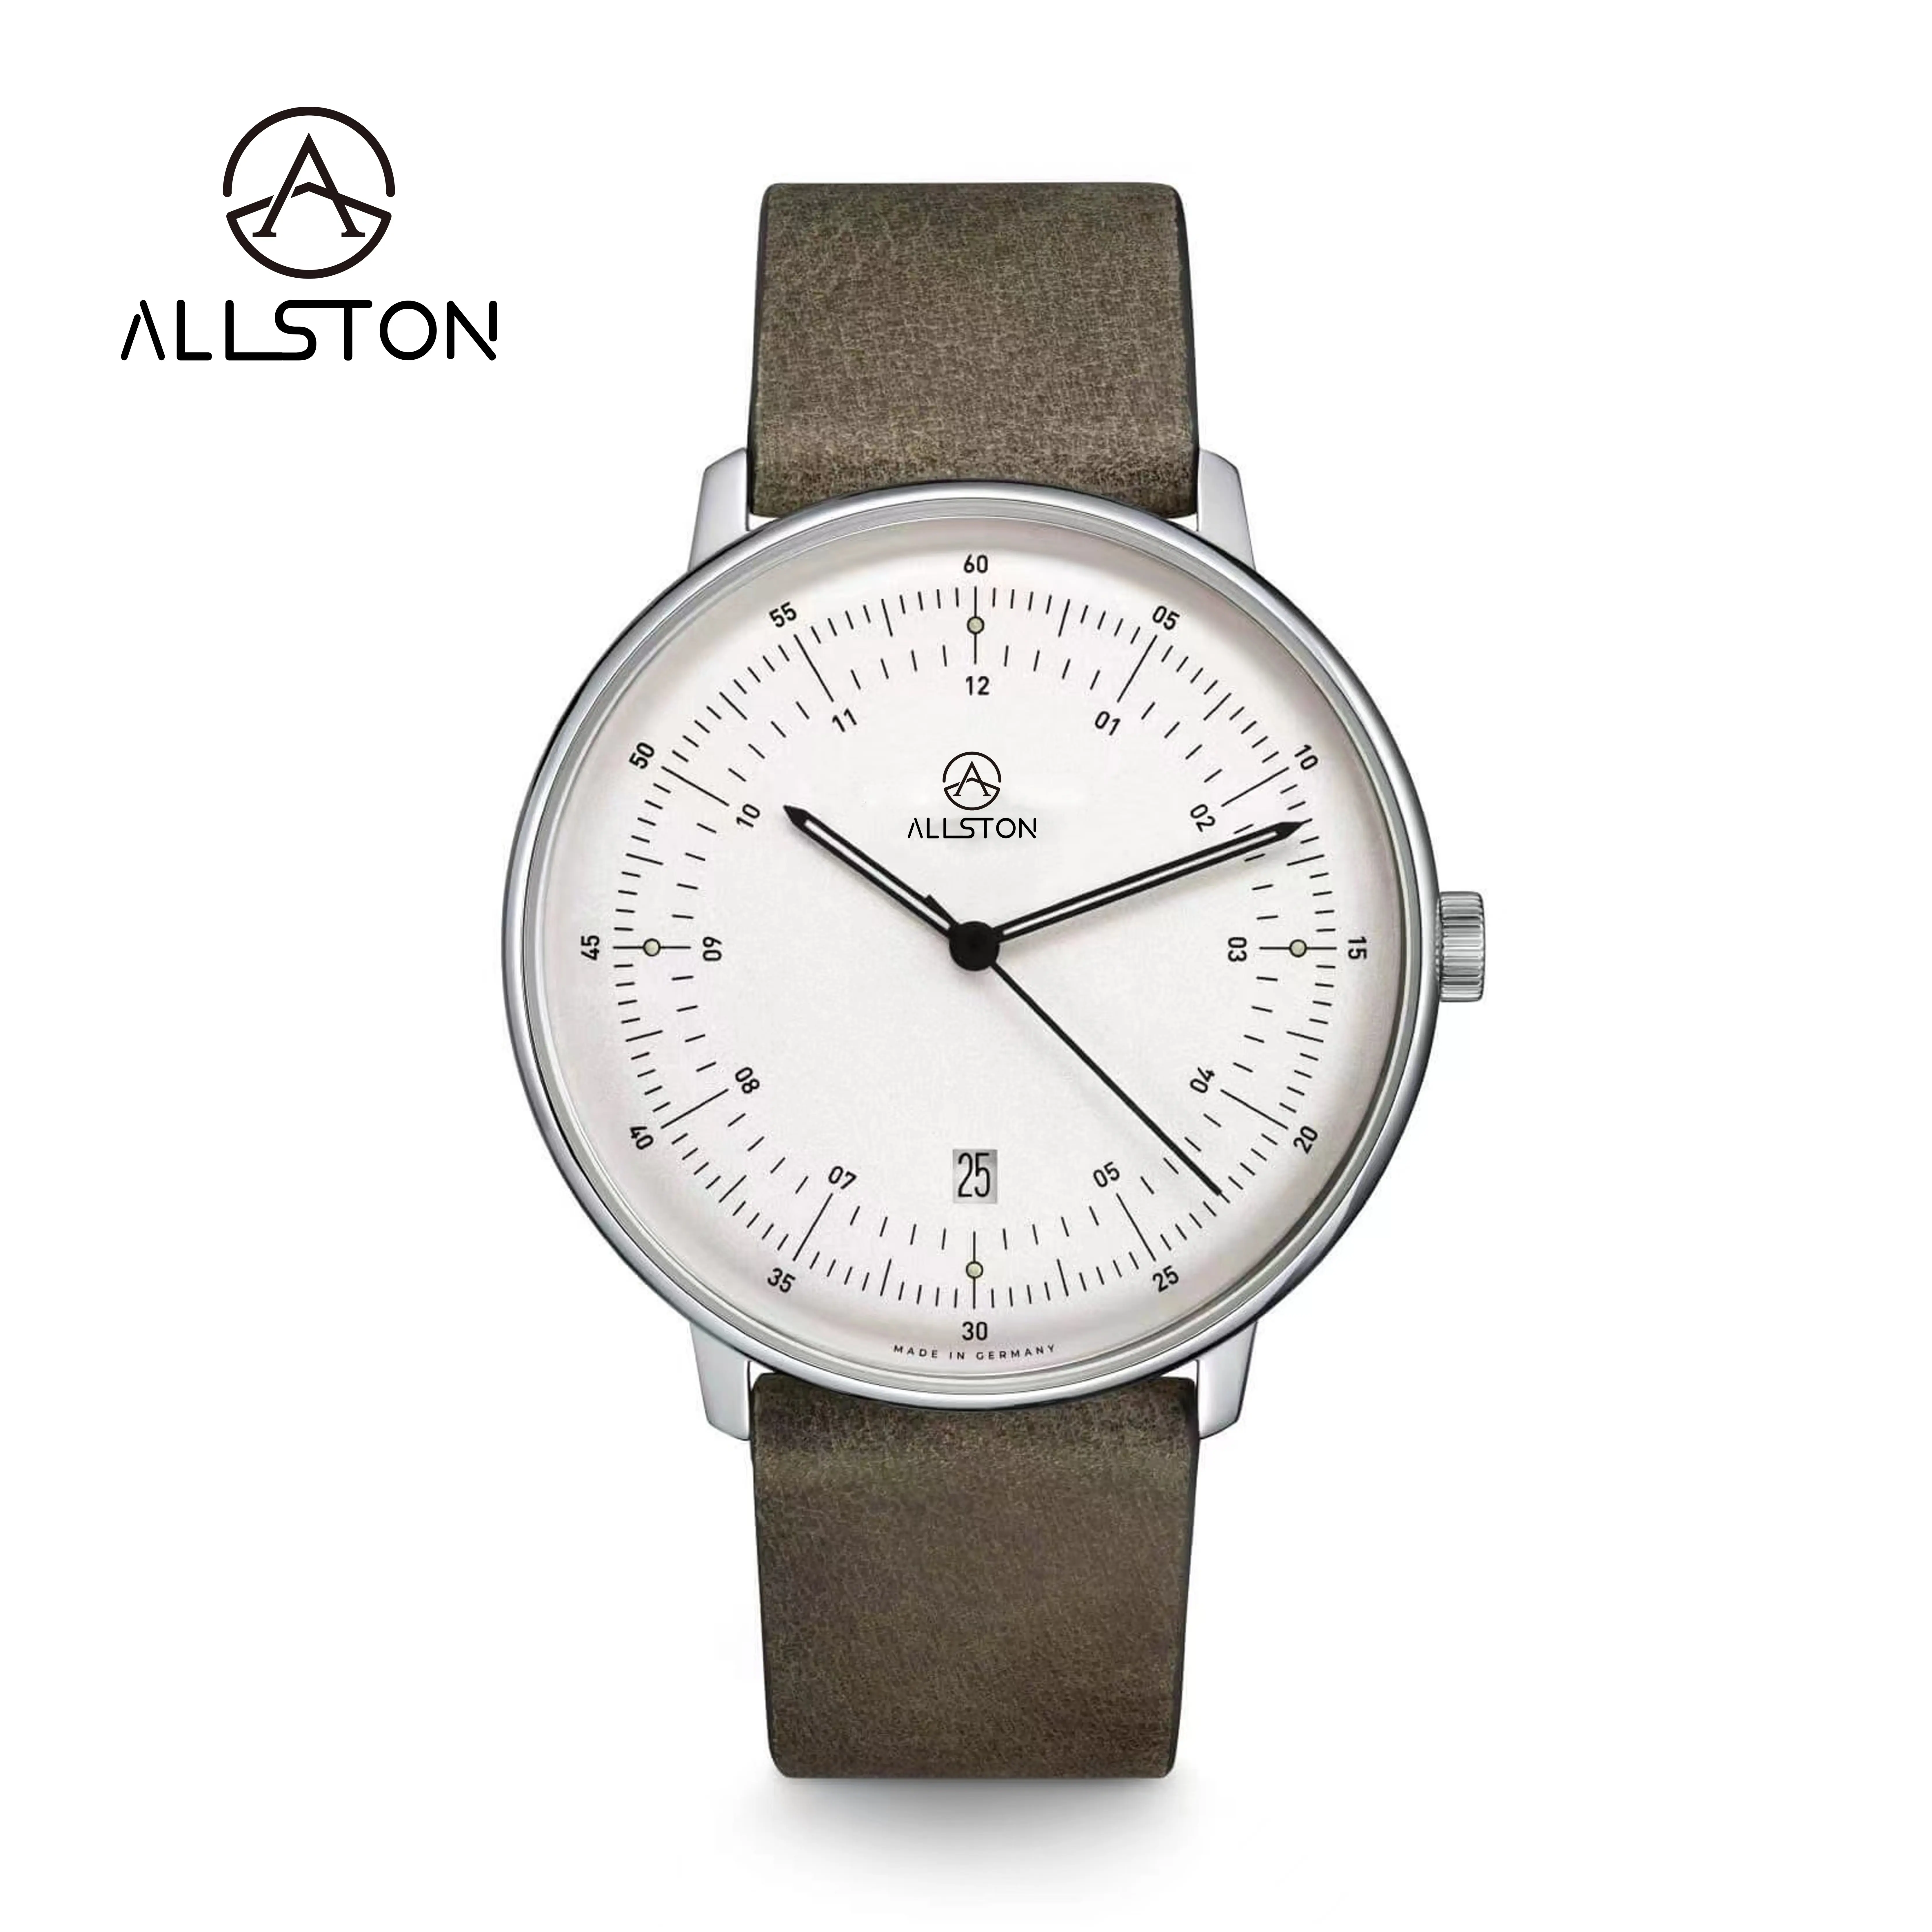 Oem logo personalizzato odm di lusso impermeabile cronografo luminoso multifunzionale moda sport orologio al quarzo per uomo